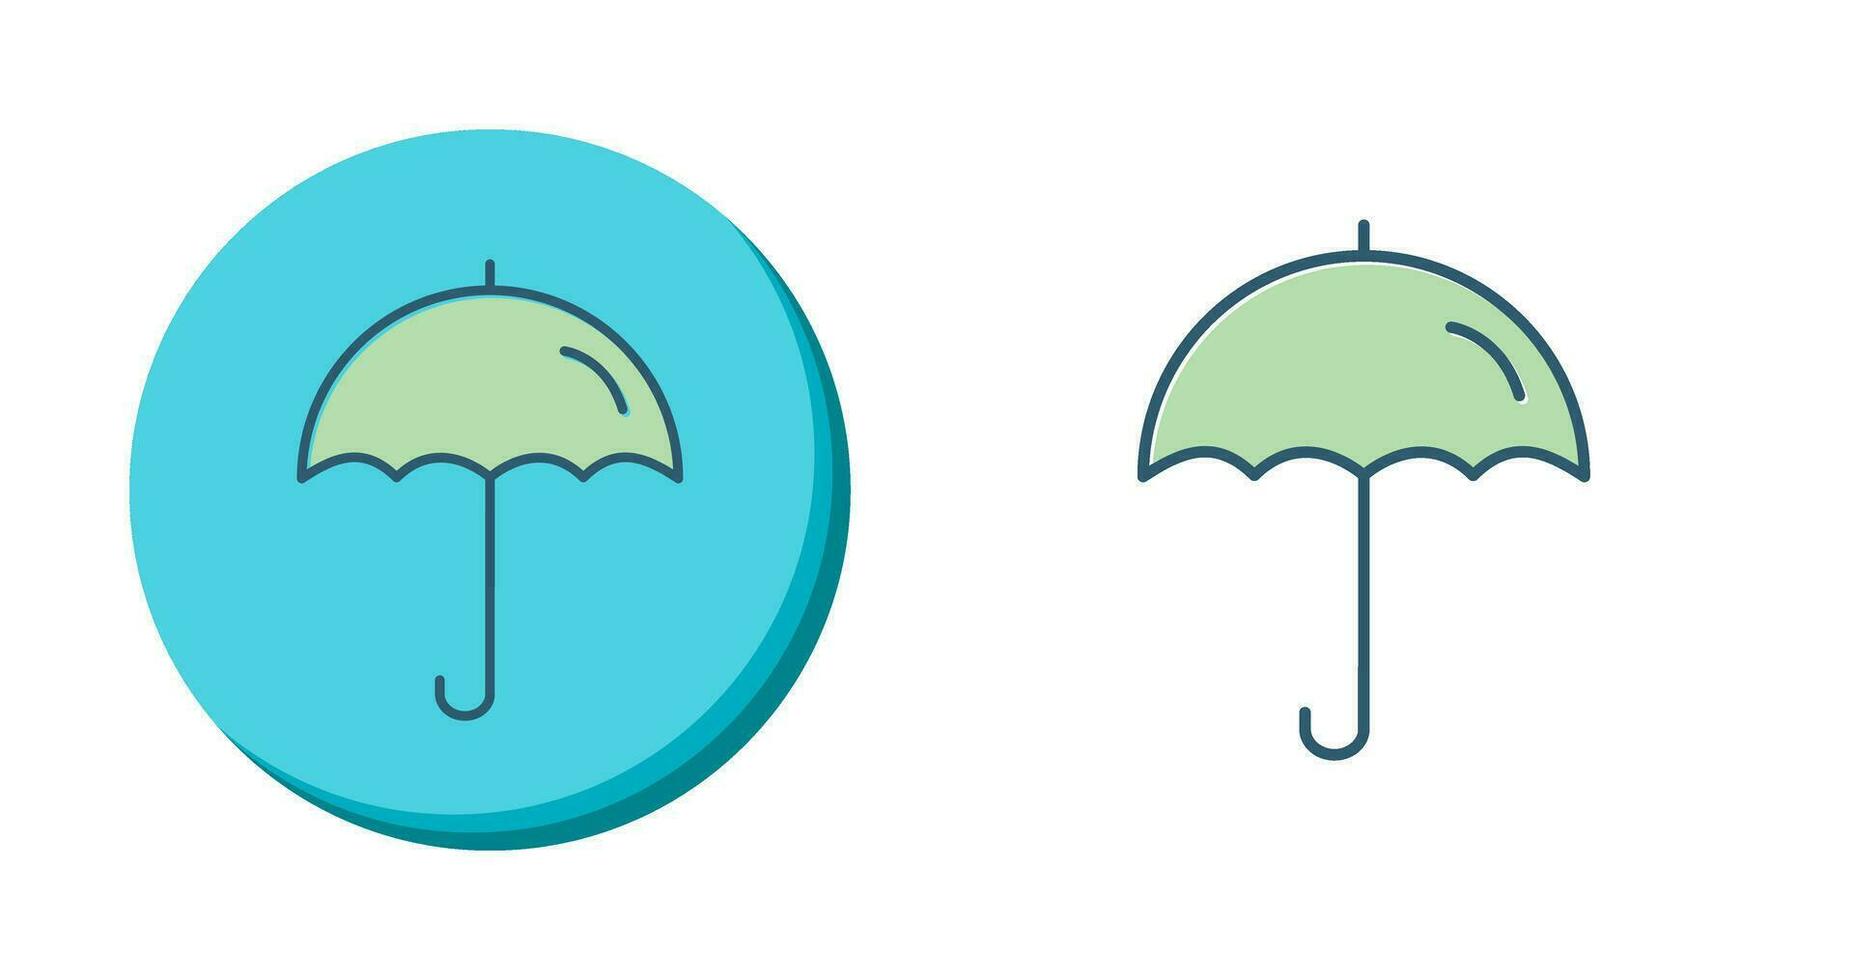 ícone de vetor de guarda-chuva